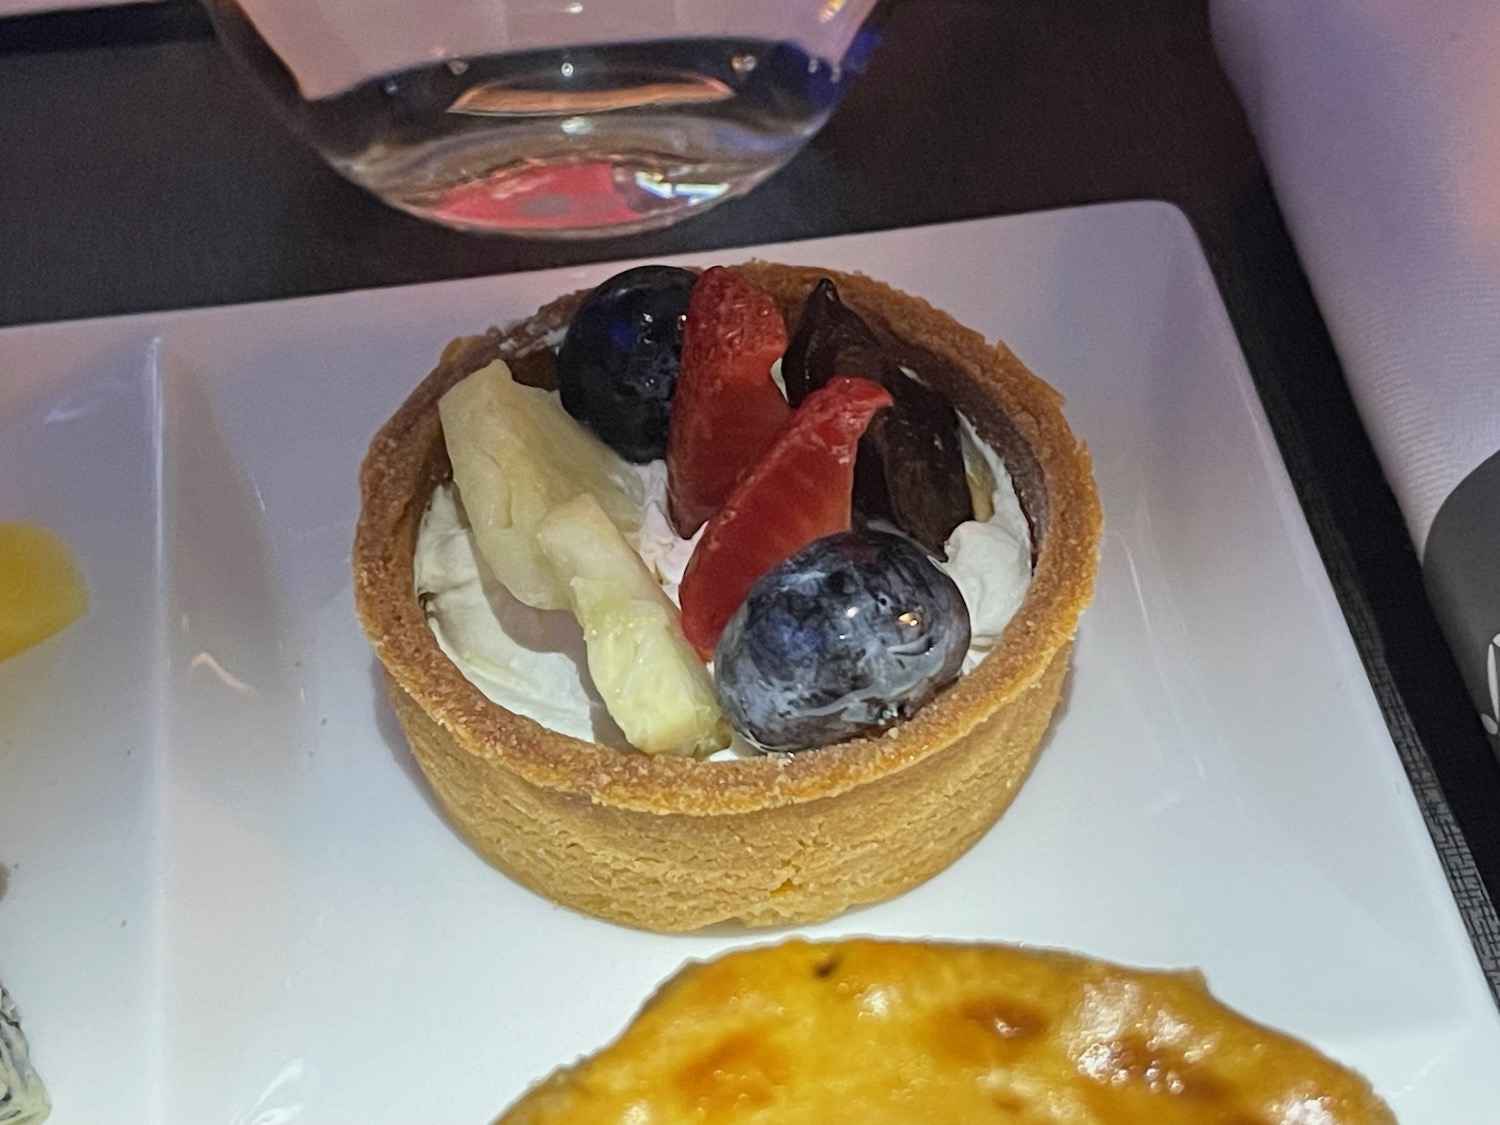 a dessert on a plate